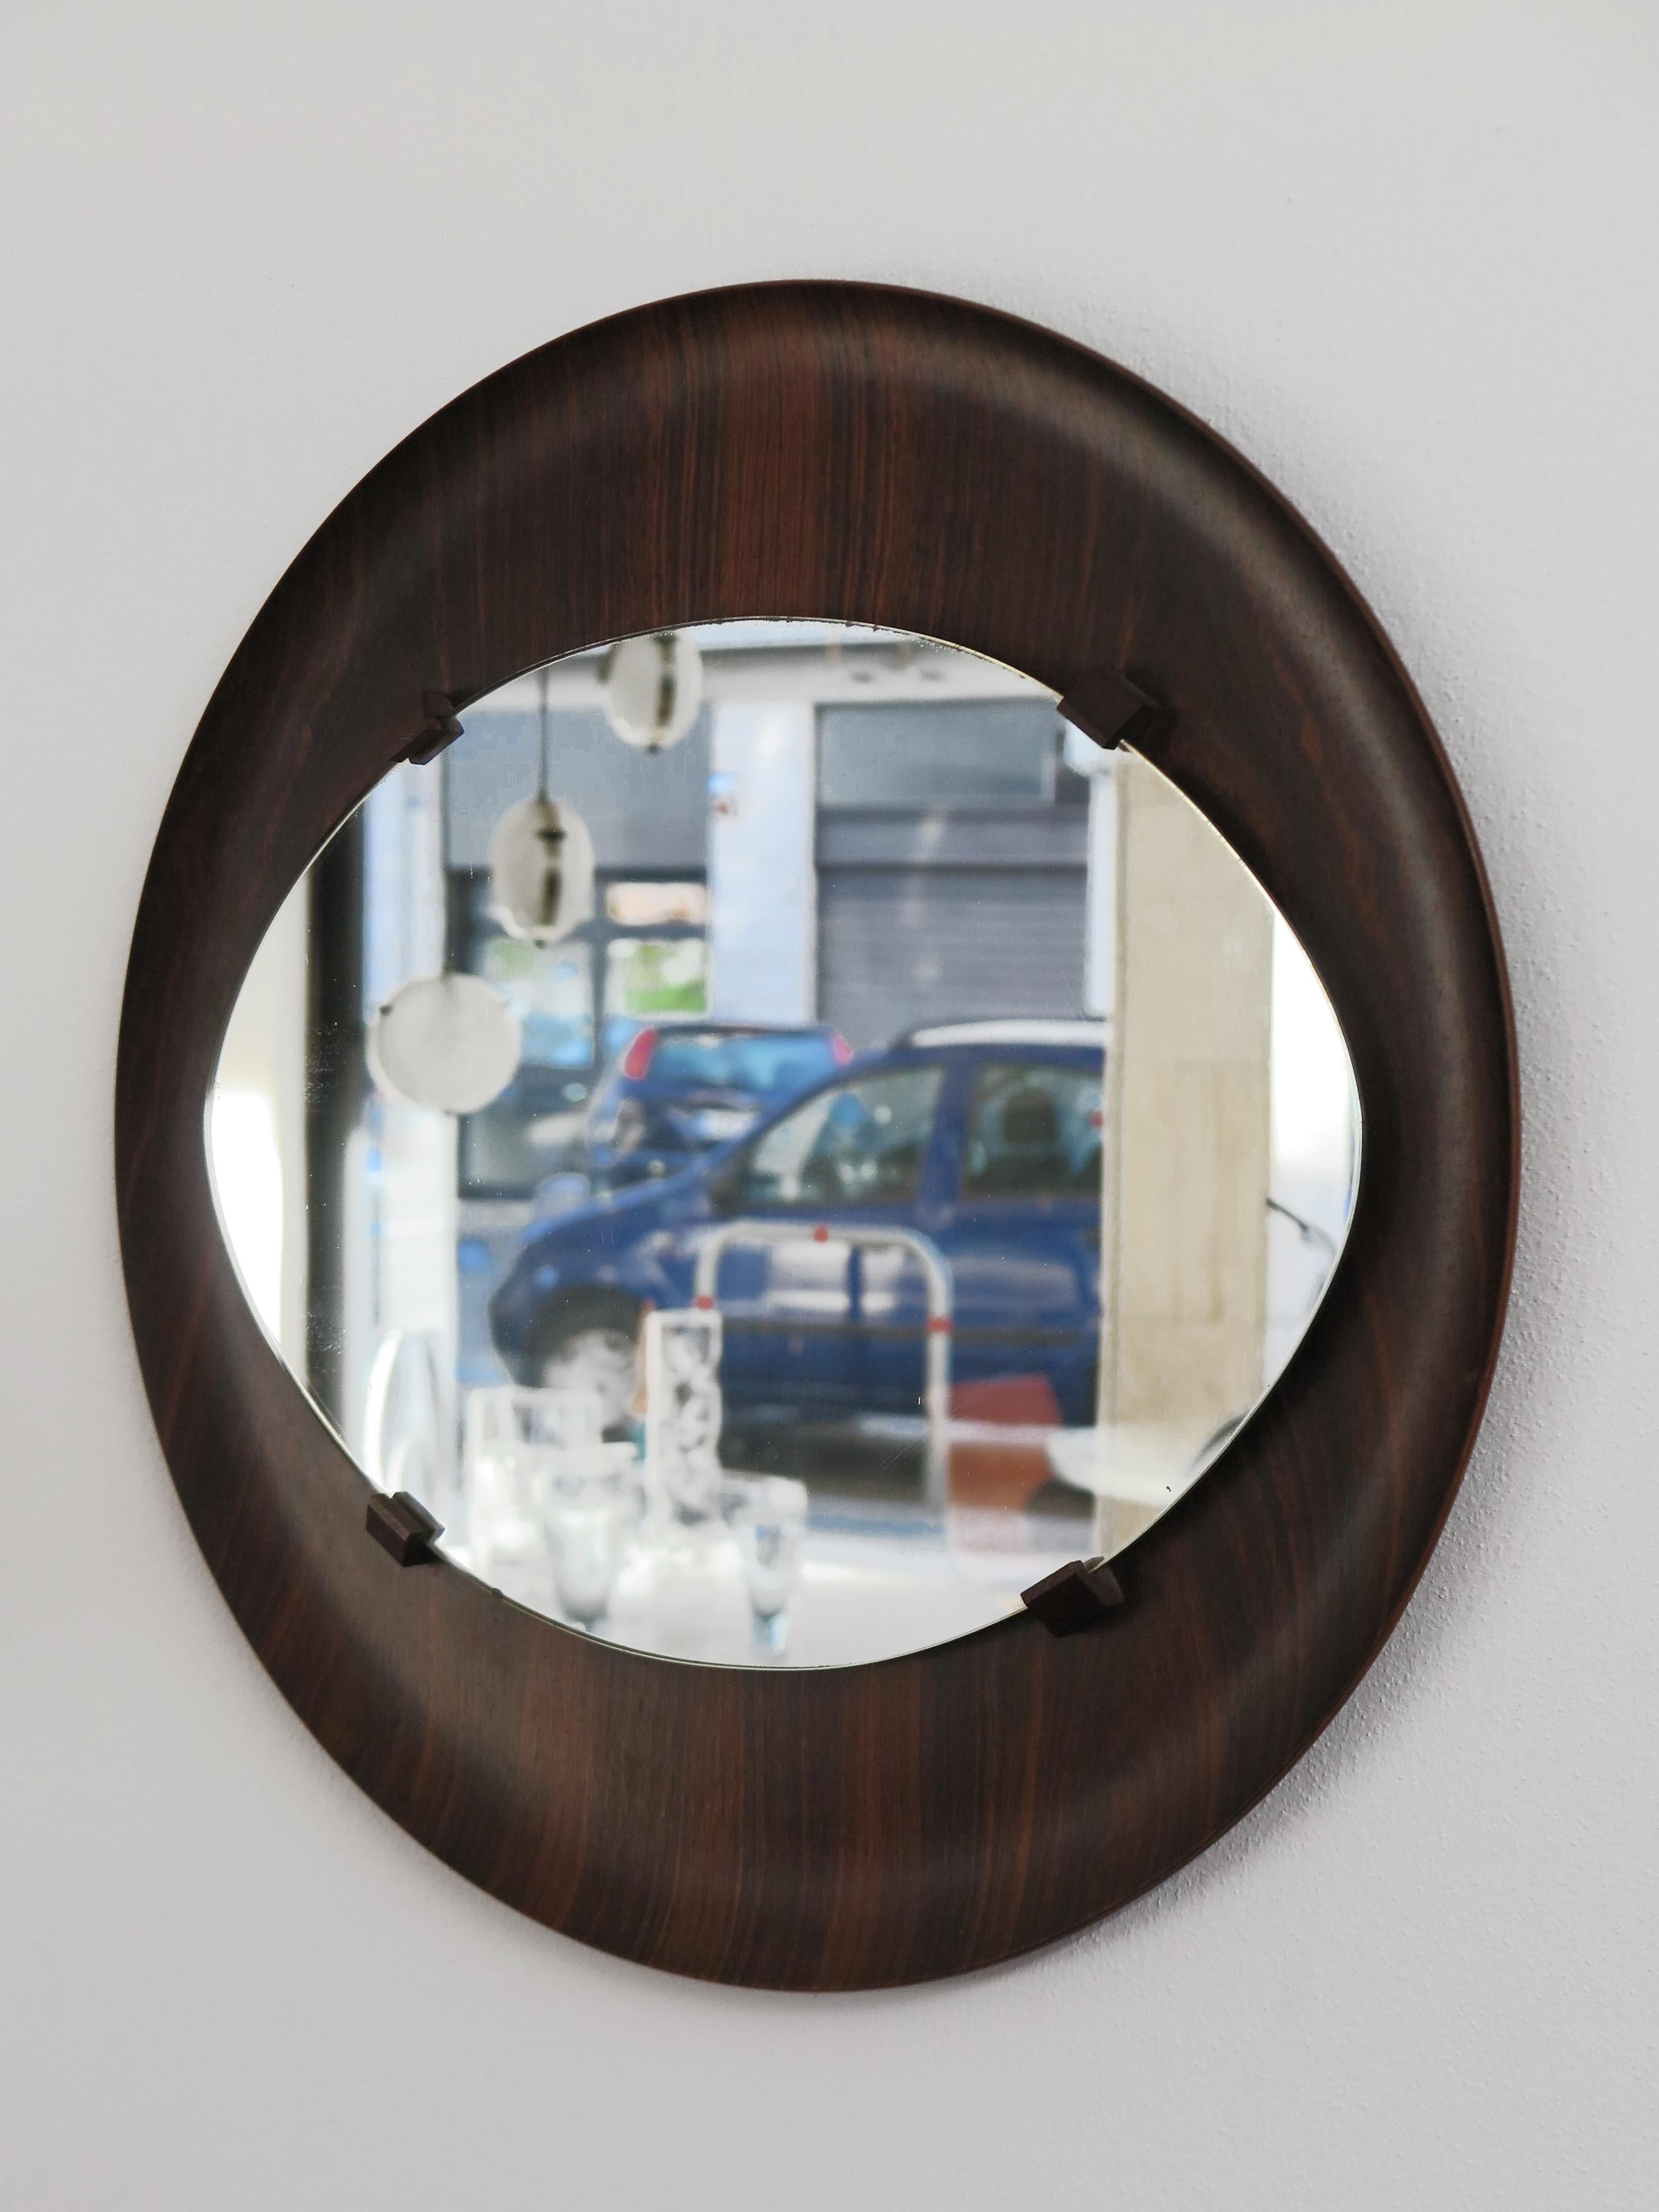 Miroir mural italien du milieu du siècle avec cadre circulaire en bois foncé courbé et verre miroir, années 1960

Veuillez noter que l'article est un original de l'époque et qu'il présente des signes normaux d'âge et d'utilisation.